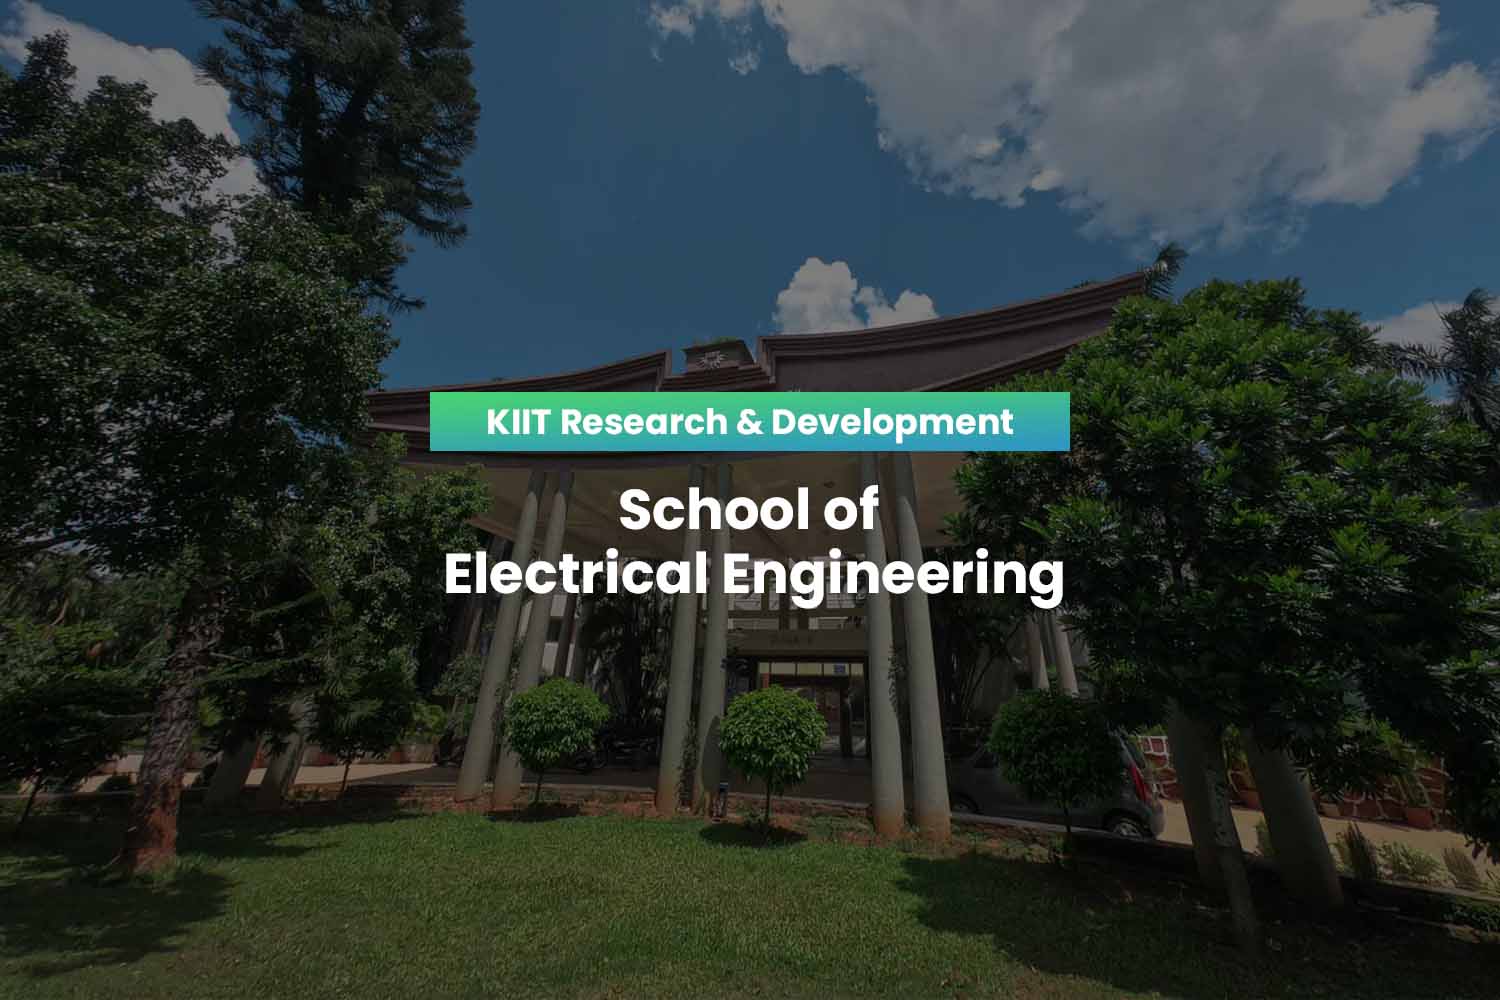 School of Electrical Engineering